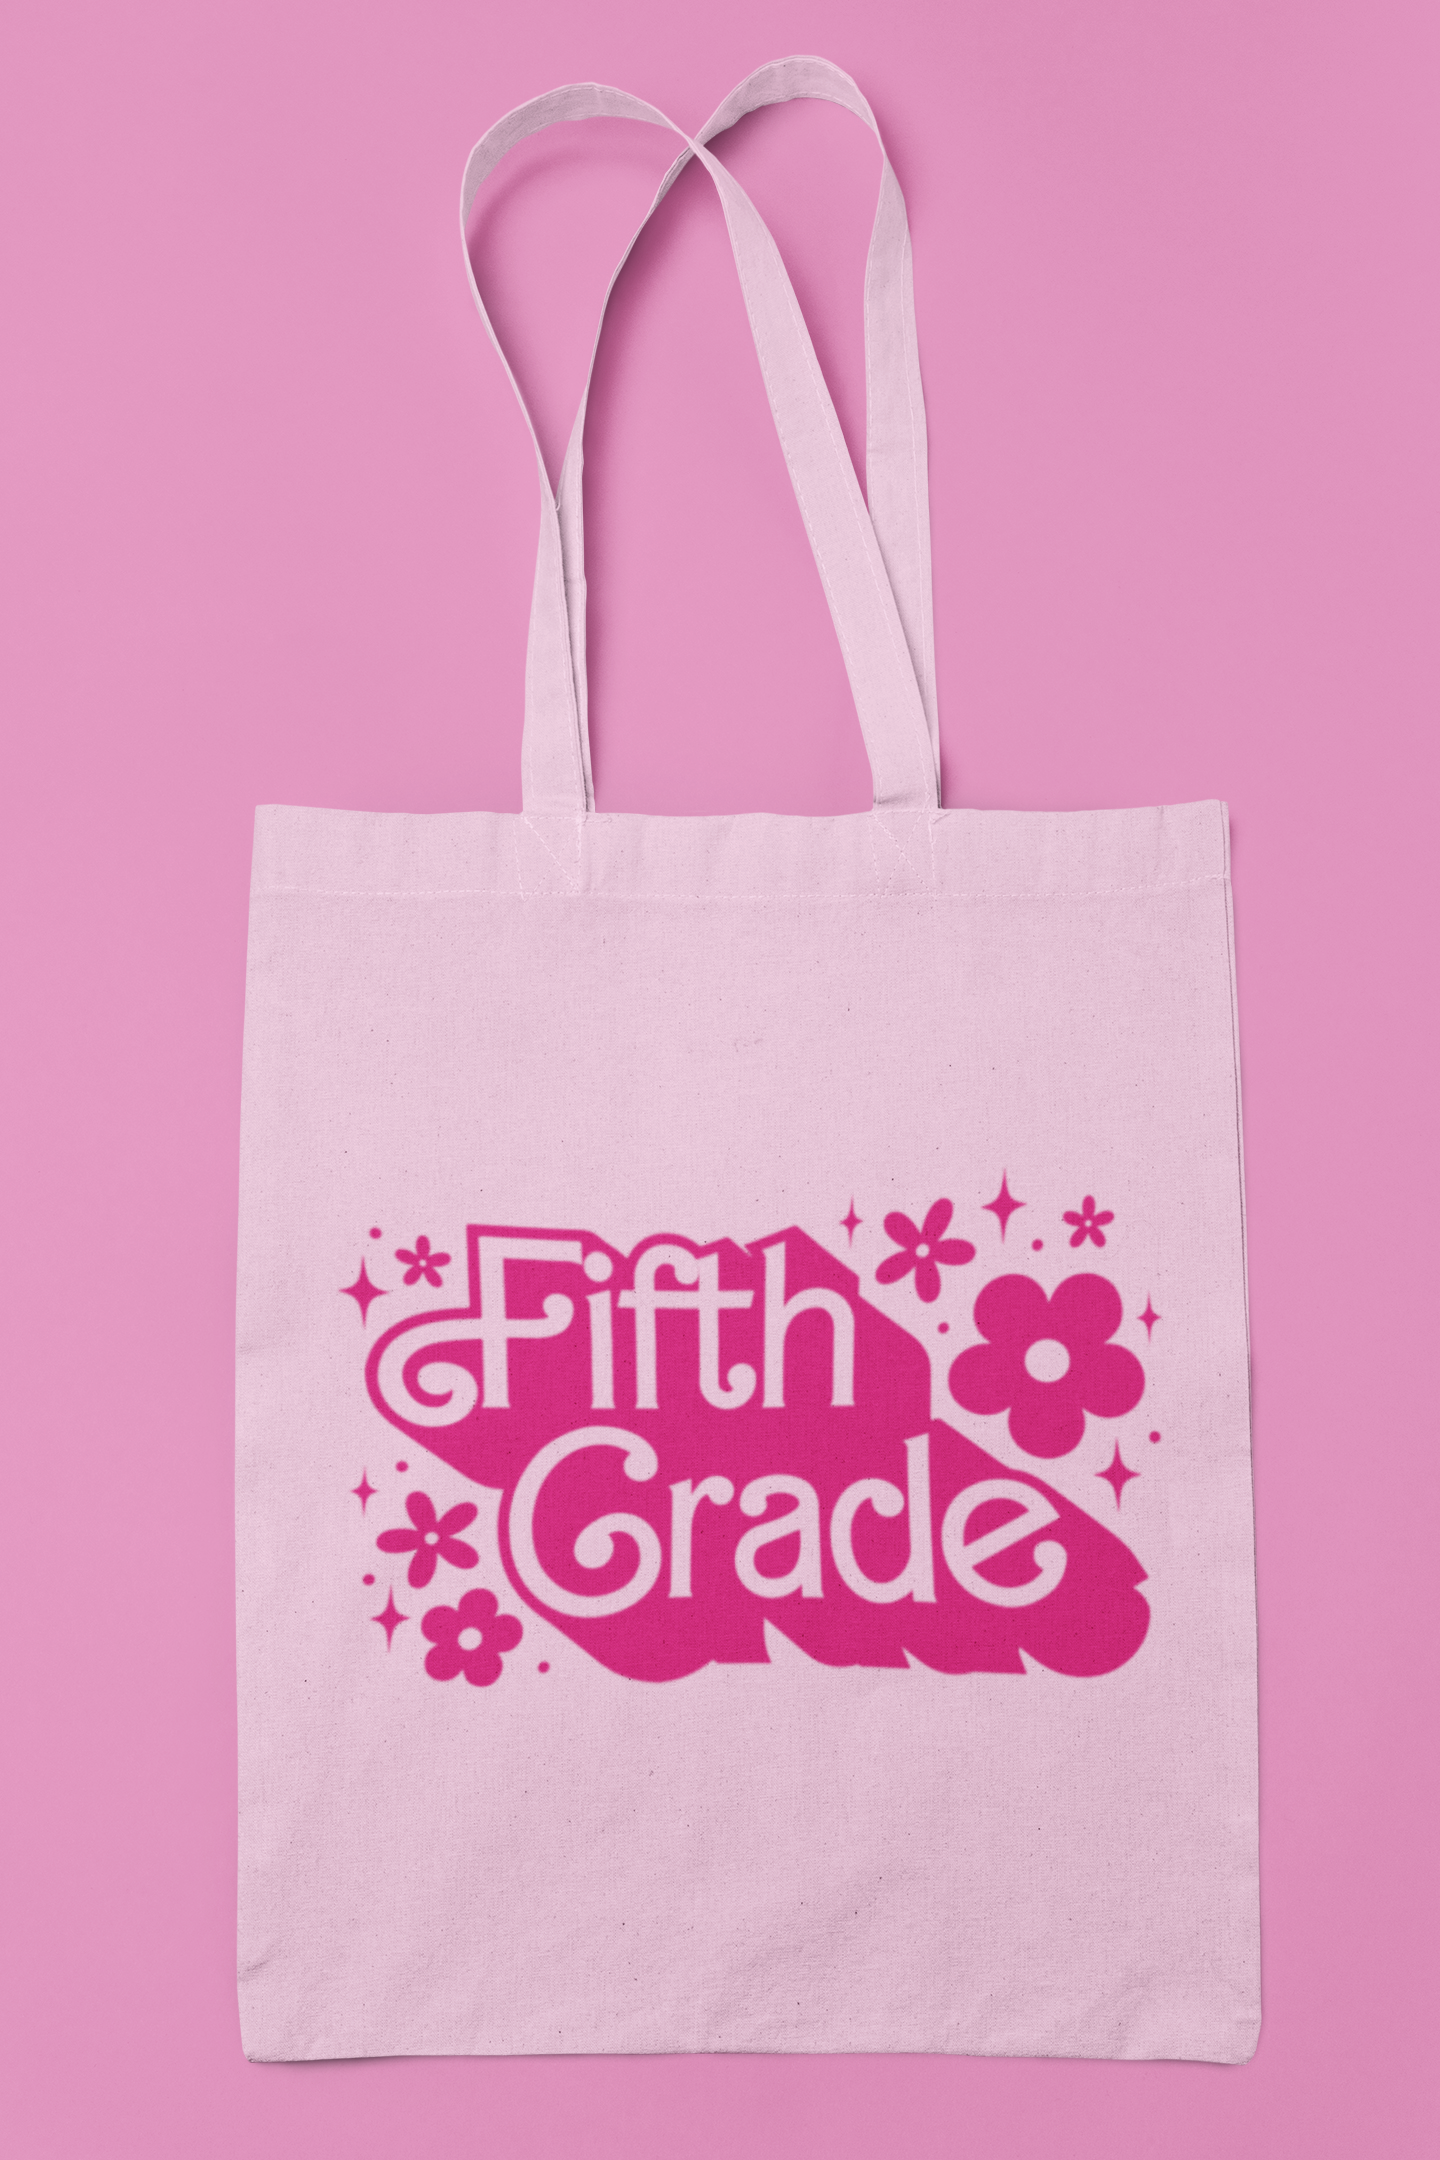 Fifth Grade Barbie SVG Digital Download Design File